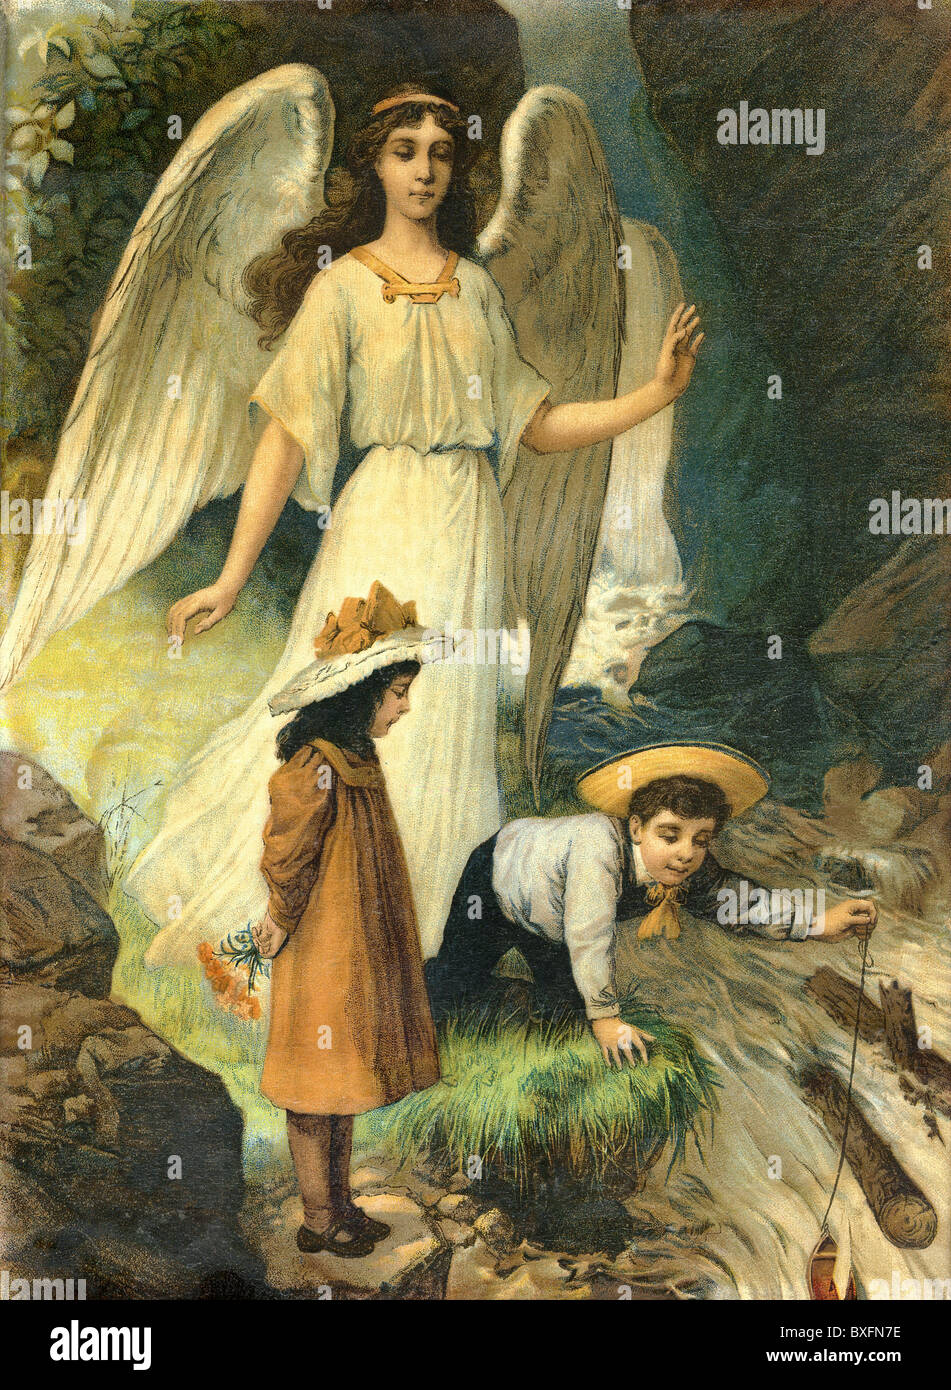 File:Guardian Angel 1900.jpg - Wikipedia